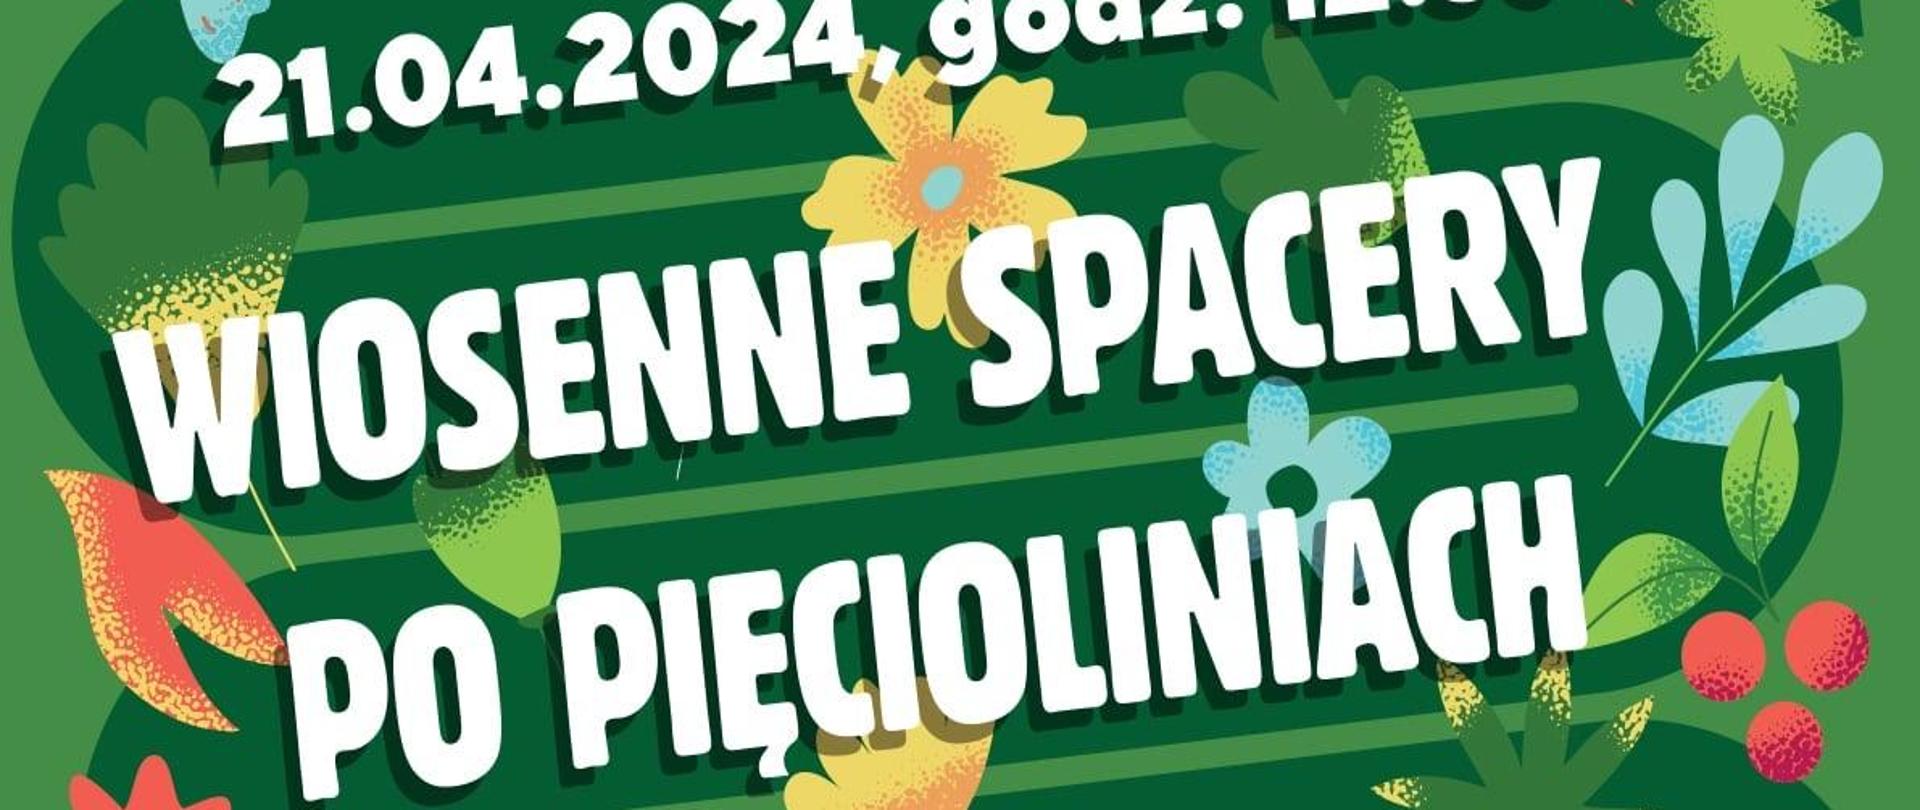 Plakat informujący o Rodzinnym Poranku Muzycznym - Wiosenne spacery po pięciolinii w dniu 21 kwietnia 2024 roku o godzinie 12.30. Plakat ma zielone tło, które ozdabiają różnokolorowe kwiatki, motylki oraz listki i wiosenne gałązki. 